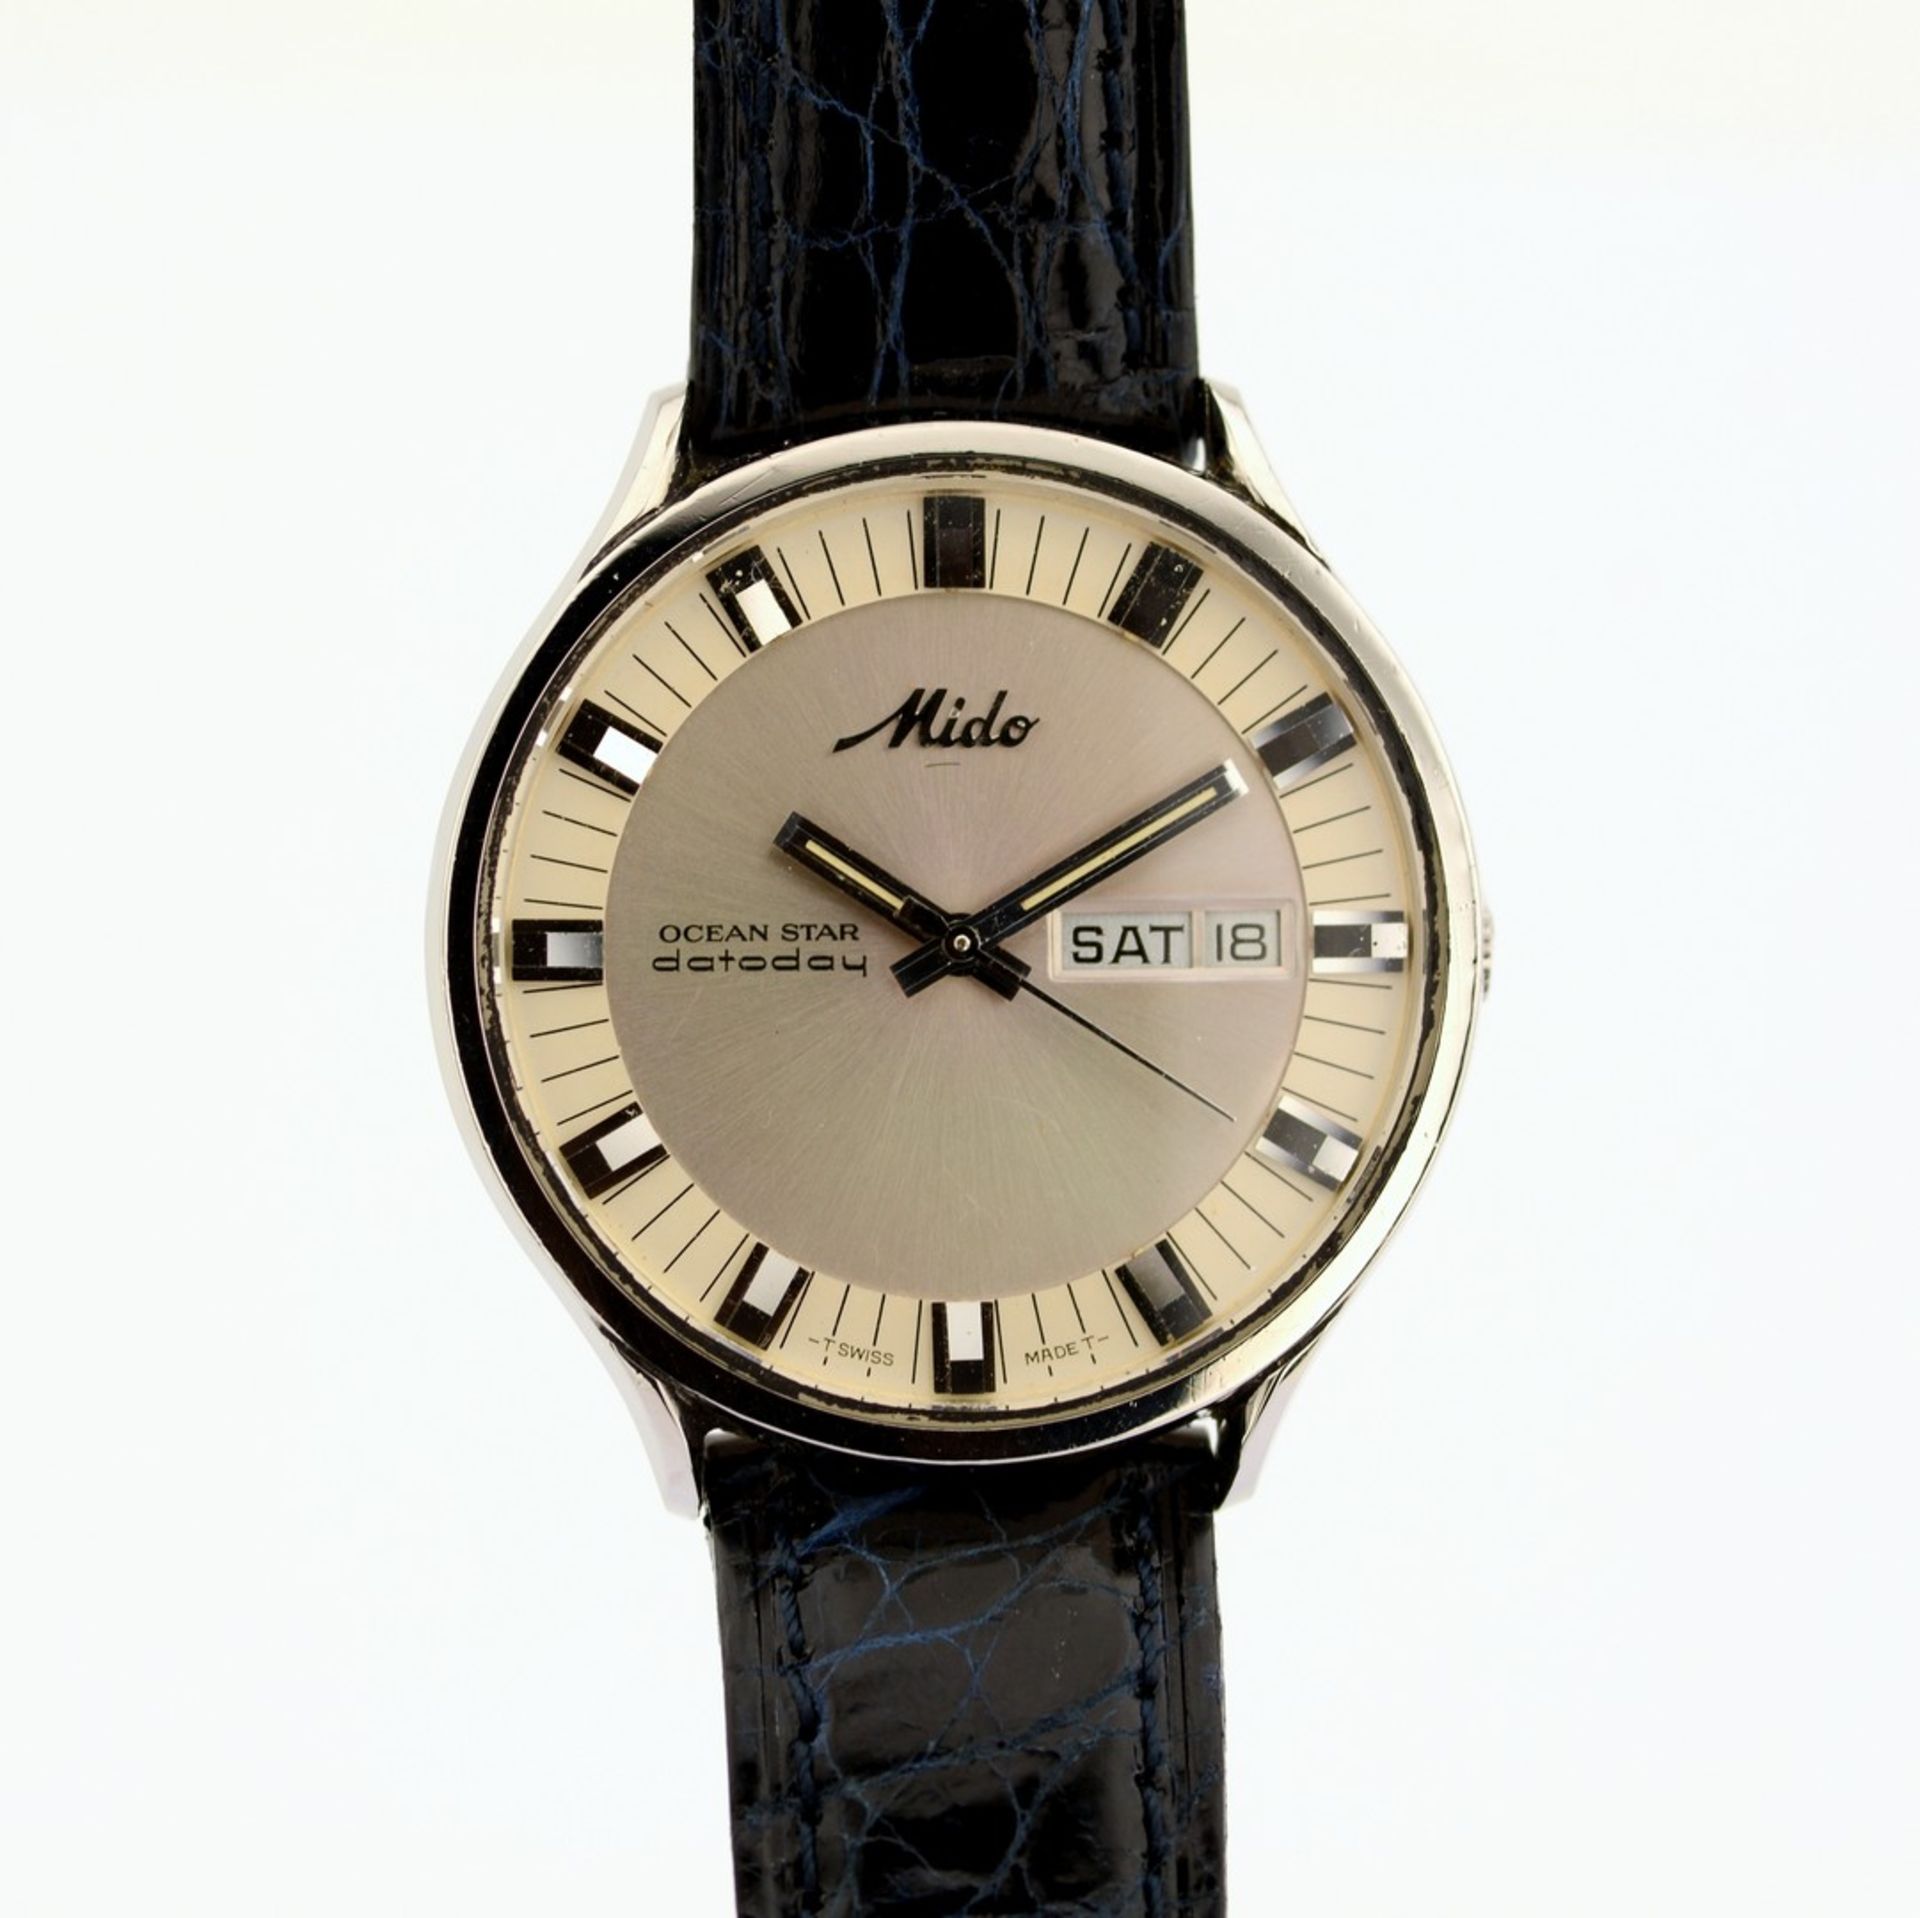 Mido / Ocean Star - Datoday - Day/Date - Gentlemen's Steel Wristwatch - Image 2 of 7